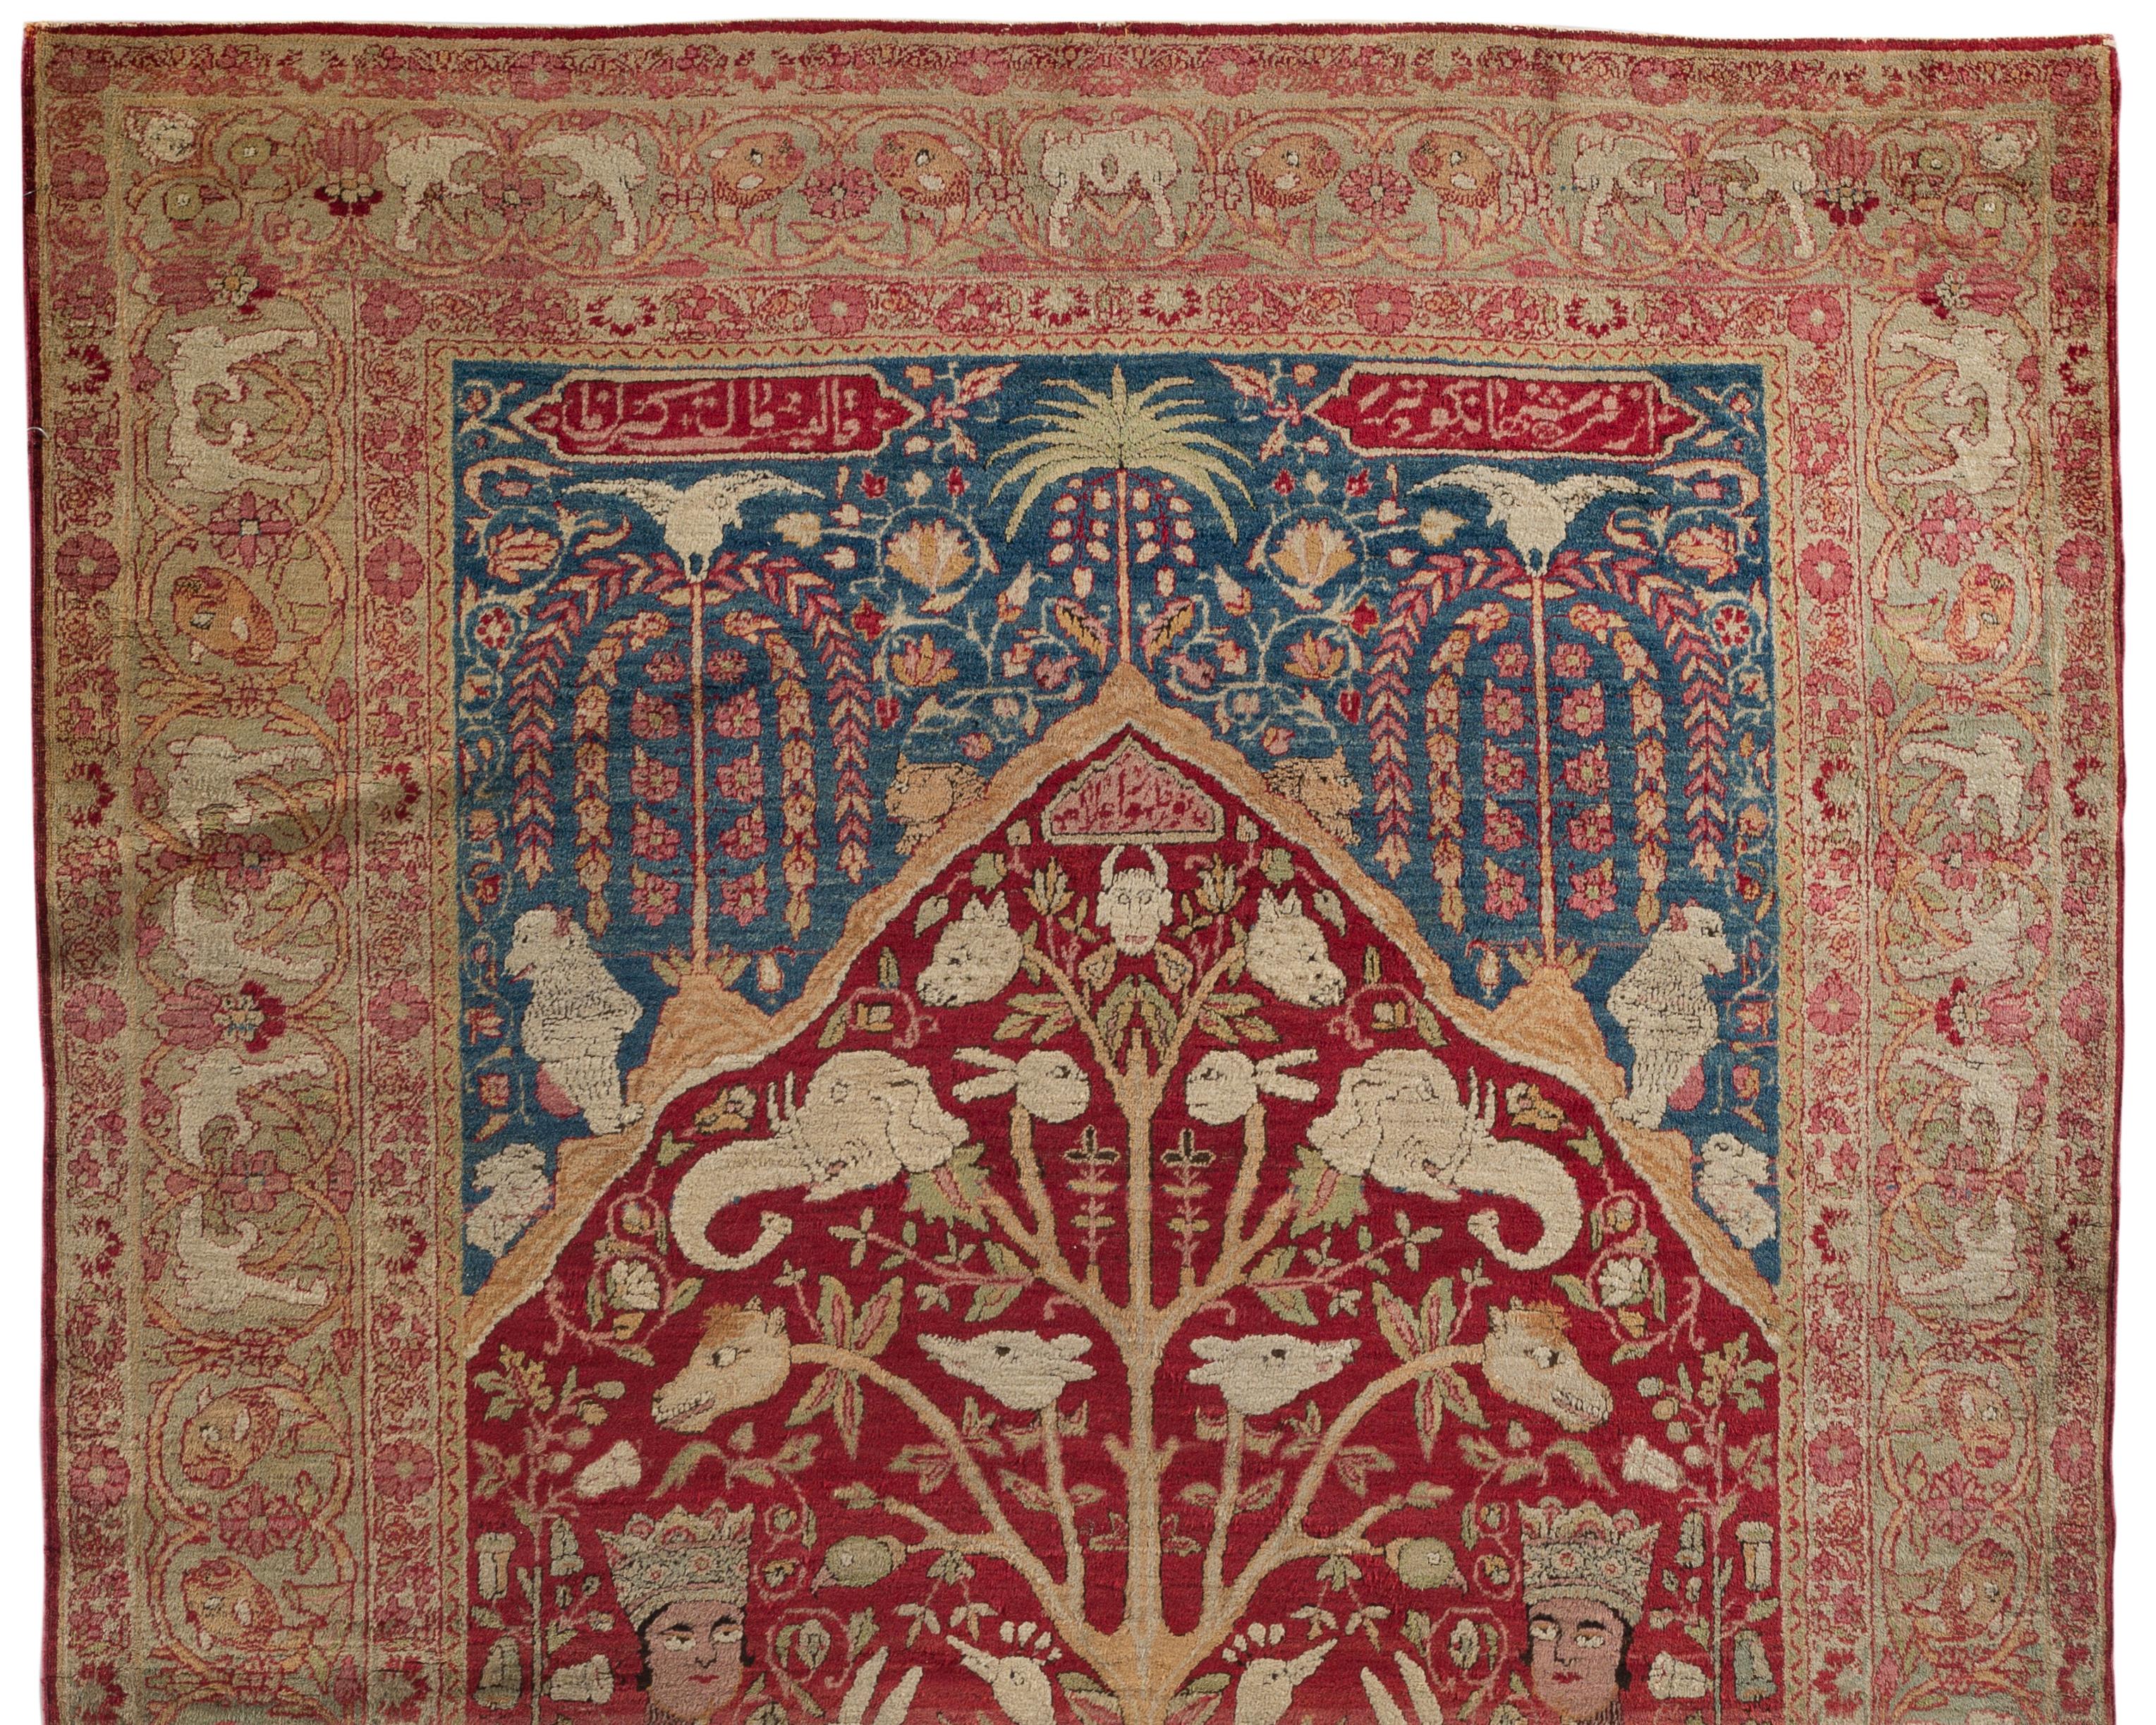 Antiker persischer Kirman Lavar Bildteppich, um 1880. Ein wunderschöner, fein gewebter Kirman Lavar Bildteppich. Die zentrale Anlage ist voller wunderbarer Kreaturen, von den katzenähnlichen Figuren, die am unteren Rand der Szene sitzen, bis hin zu